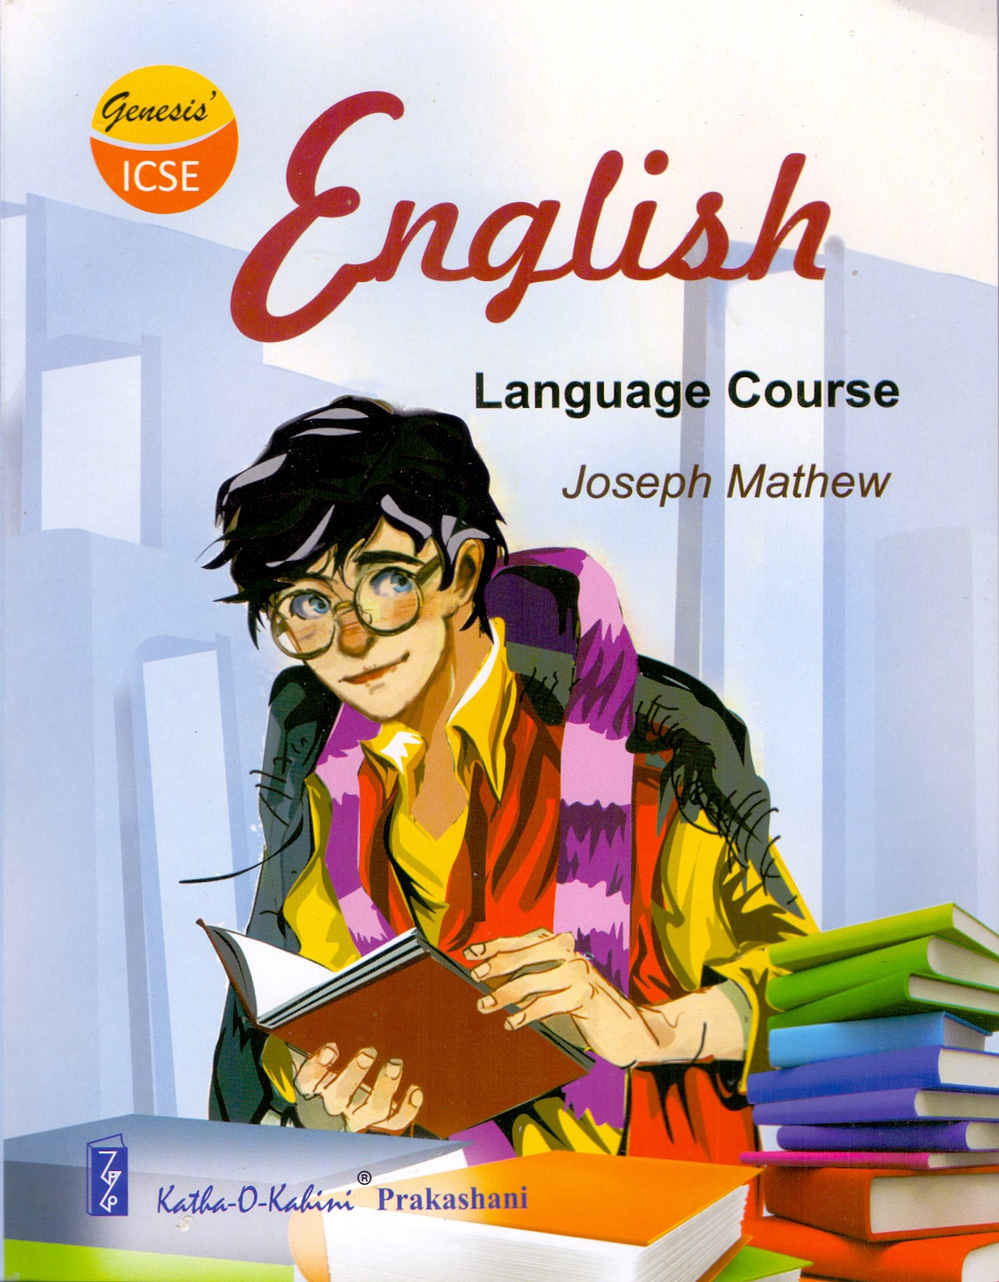 Genesis ICSE English Language Course